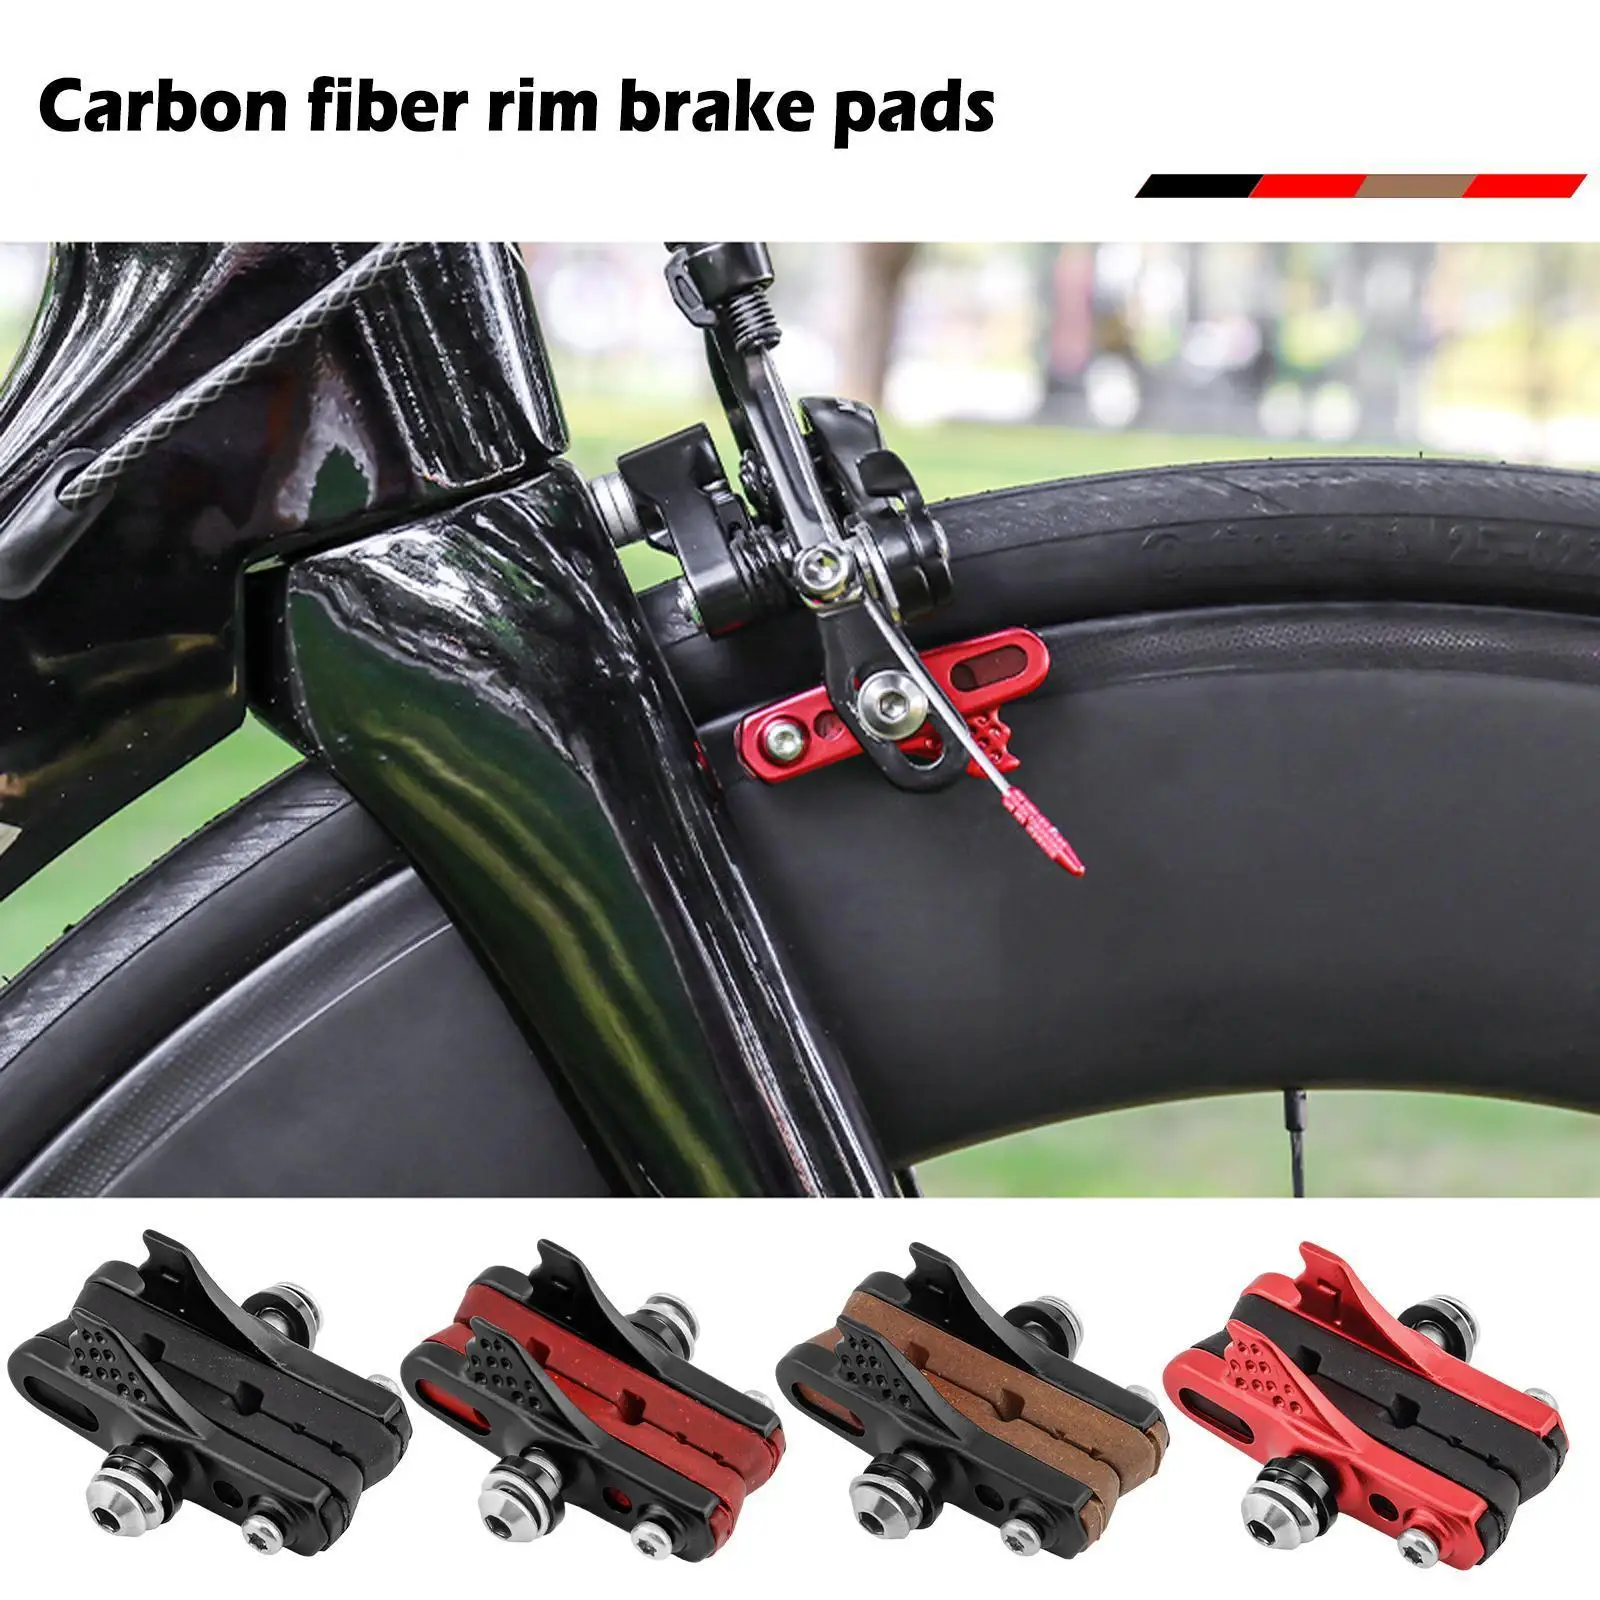 Матовые велосипедные Тормозные колодки для карбоновых колесных дисков, Тормозные вставки для суппорта шоссейного велосипеда, Блок для рассеивания тепла карбоновой колесной пары H7E9